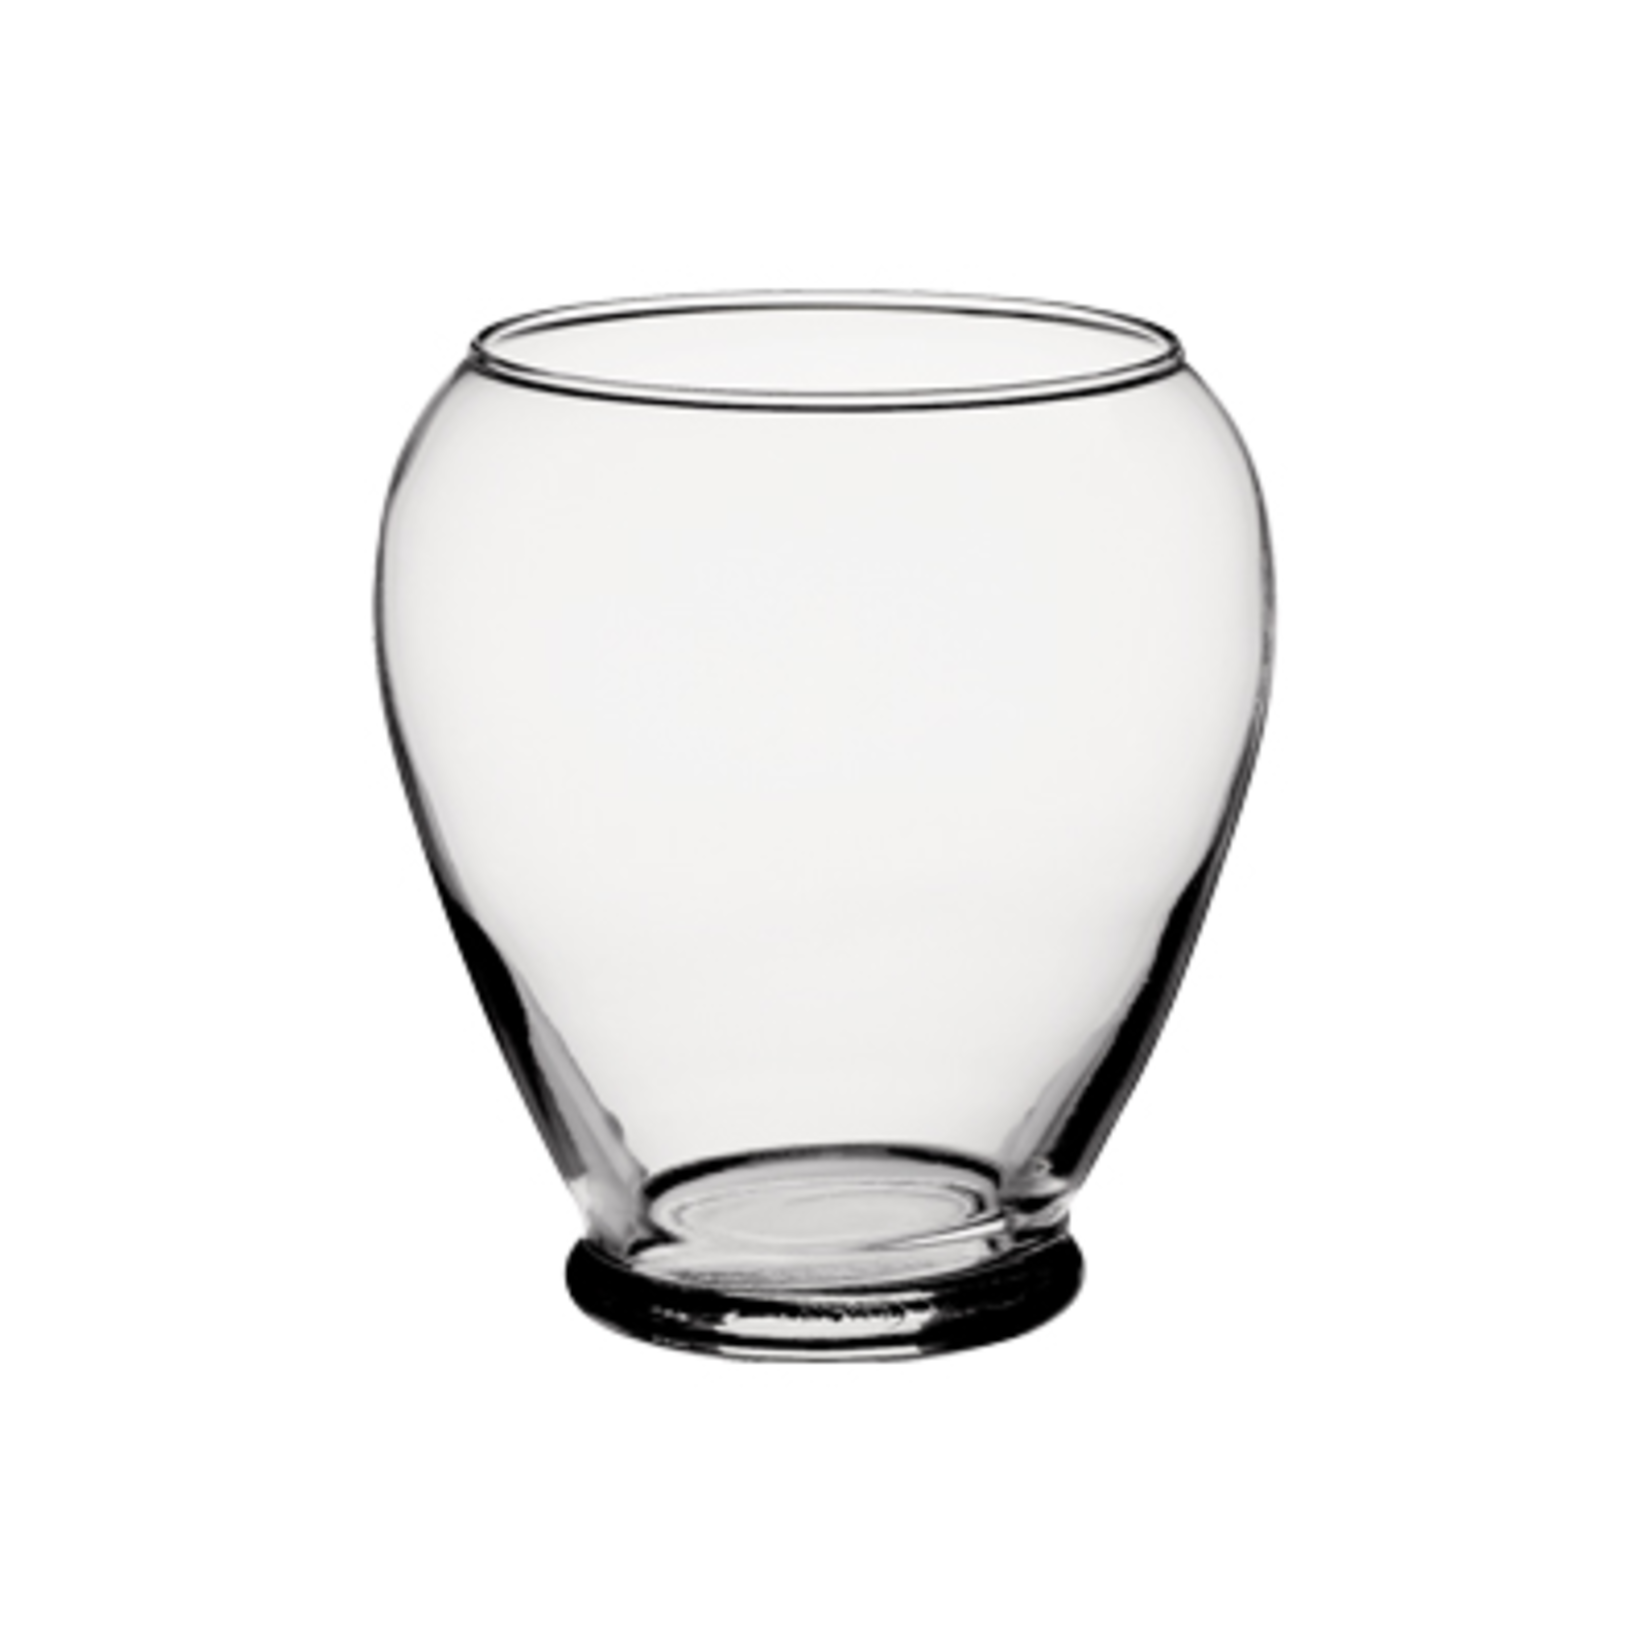 5 3/4" Serenity Vase - Crystal